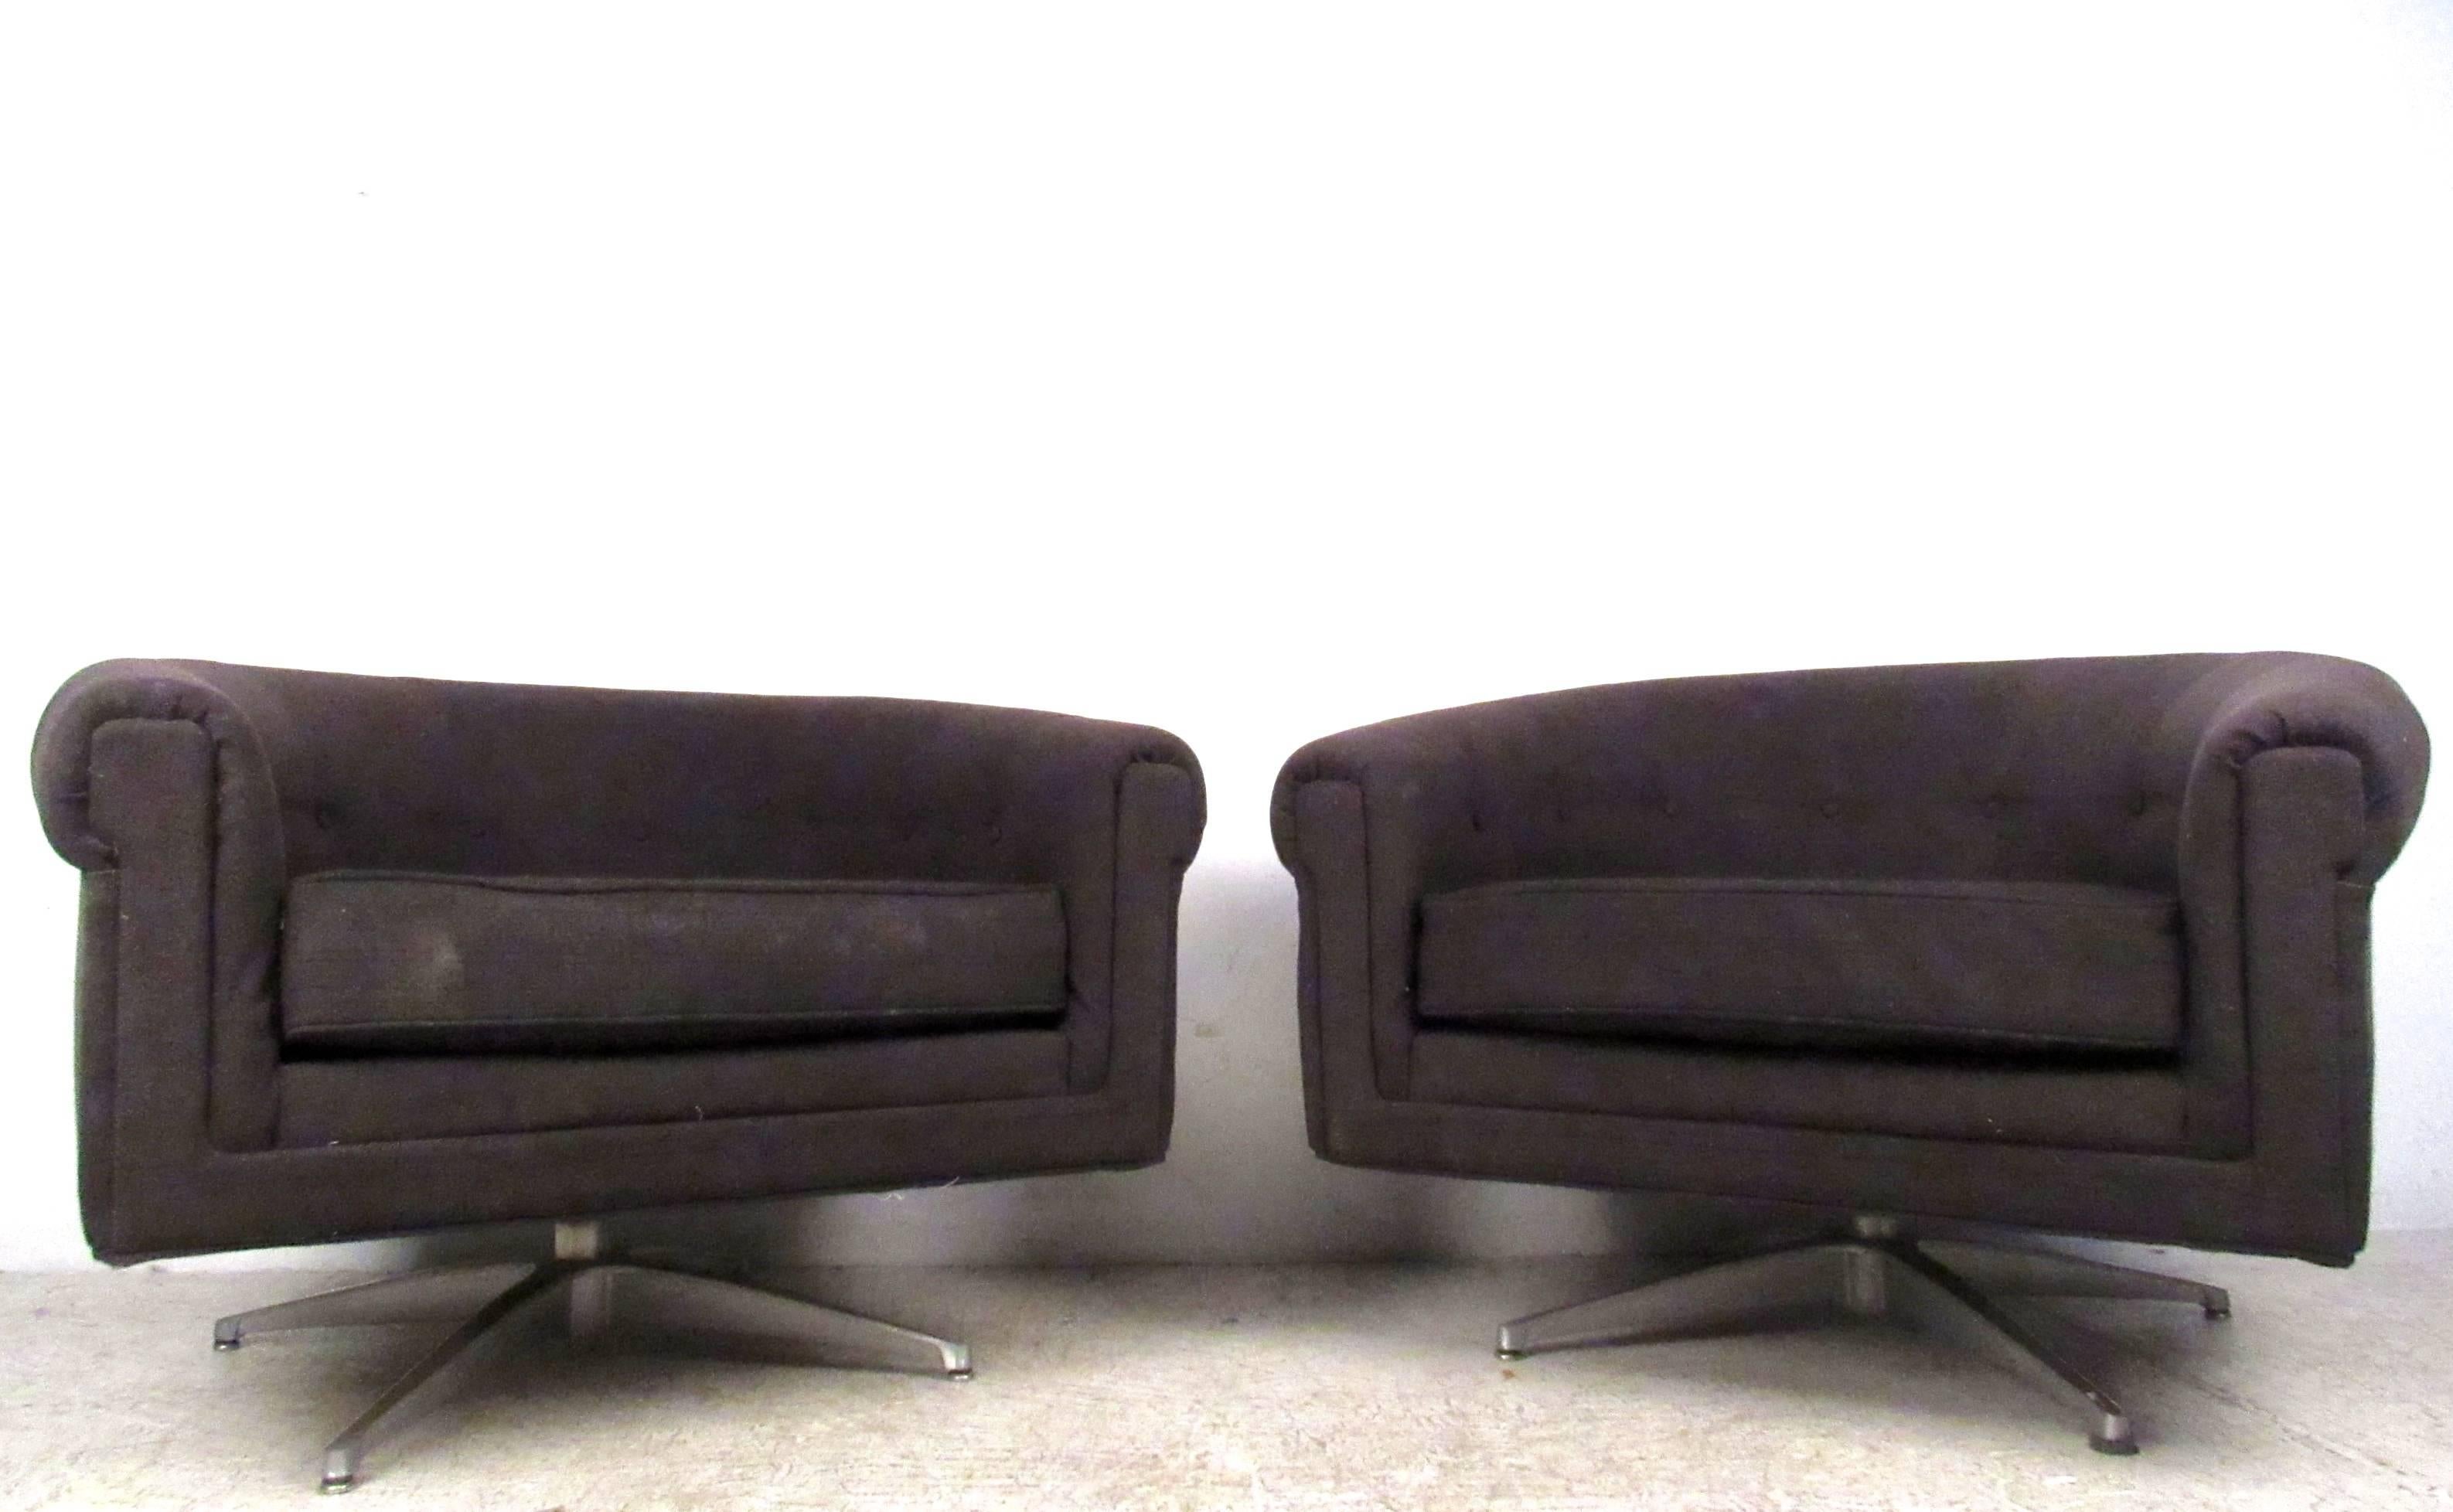 Dieses bequeme Paar drehbarer Lounge-Sessel von Selig ist eine stilvolle Ergänzung für jede Umgebung. Dieses einzigartige Paar mit abgerundeten Rückenlehnen und robusten Metallfüßen ist perfekt für Ihr Zuhause oder Ihr Büro. Bitte bestätigen Sie den